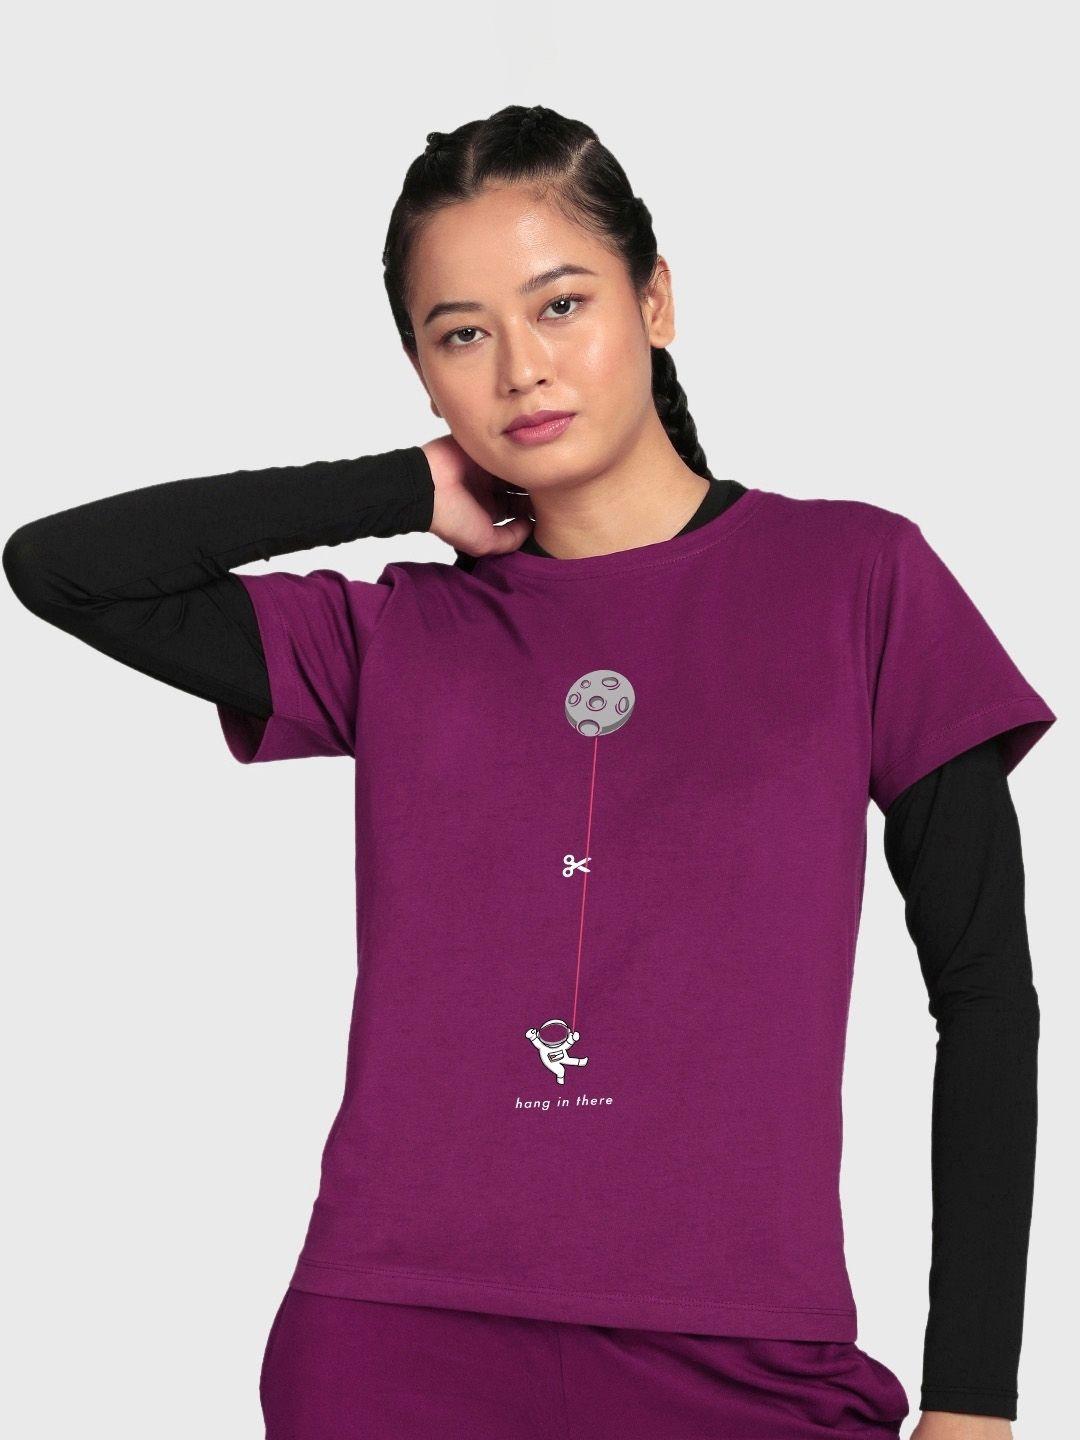 bewakoof women graphic printed cotton sports t-shirt